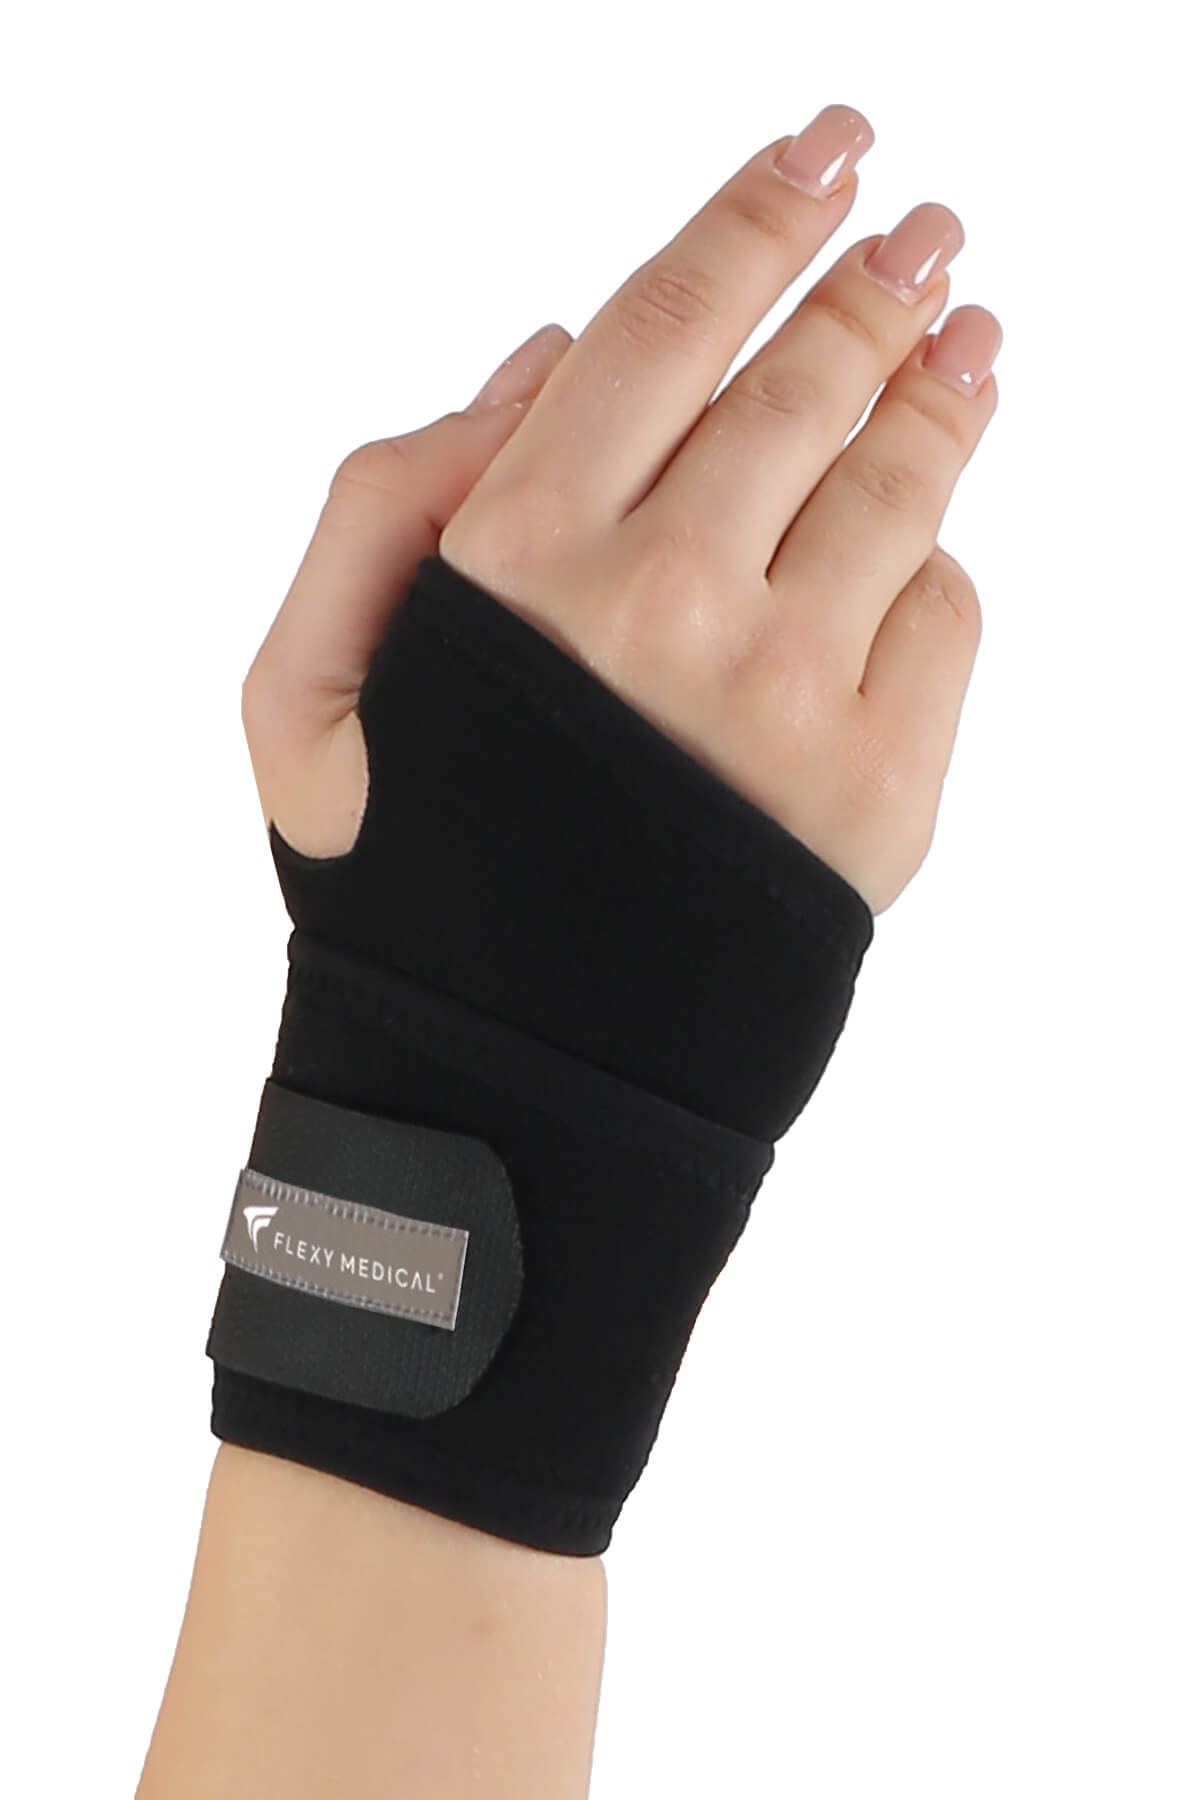 Flexy Medical El Bilek Bandajı (Splint) - El Ve Bilek Ağrısı - Bilek Destekleyici - Sporcu El Bilek Koruyucu Atel